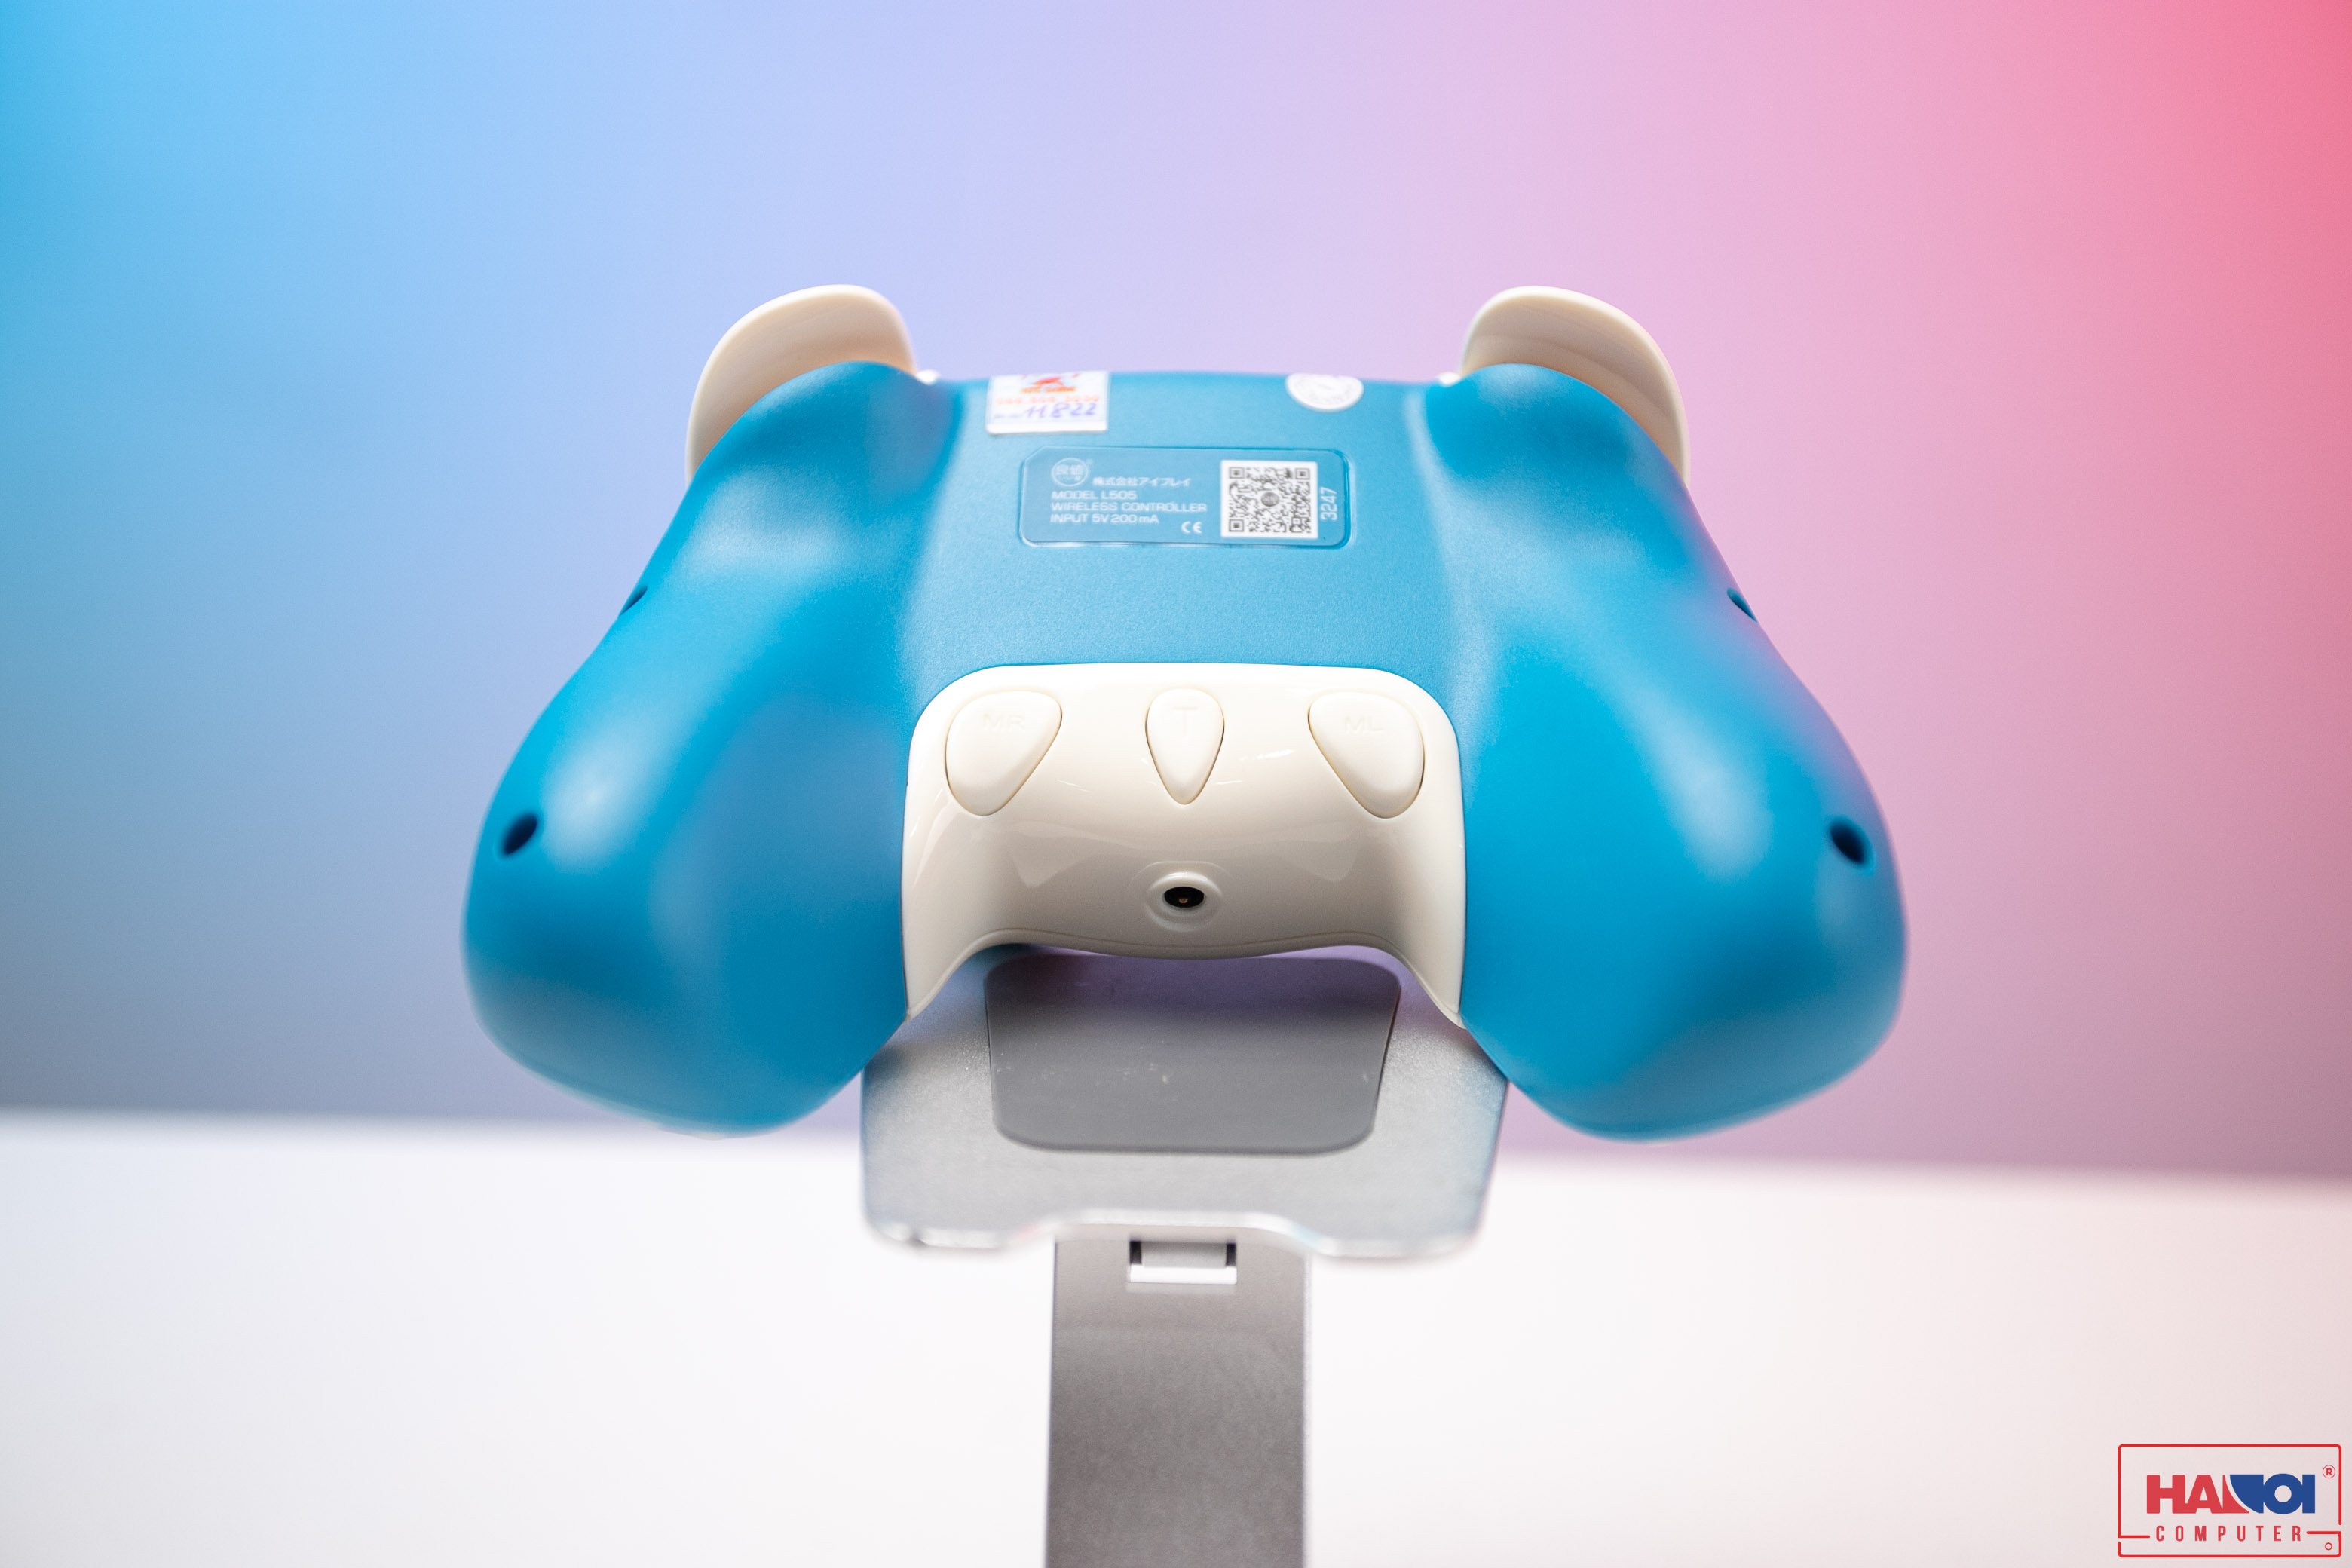 Tay cầm chơi game không dây IINE Pro Controller Animal cho Nintendo Switch/PC, màu Blue Fox